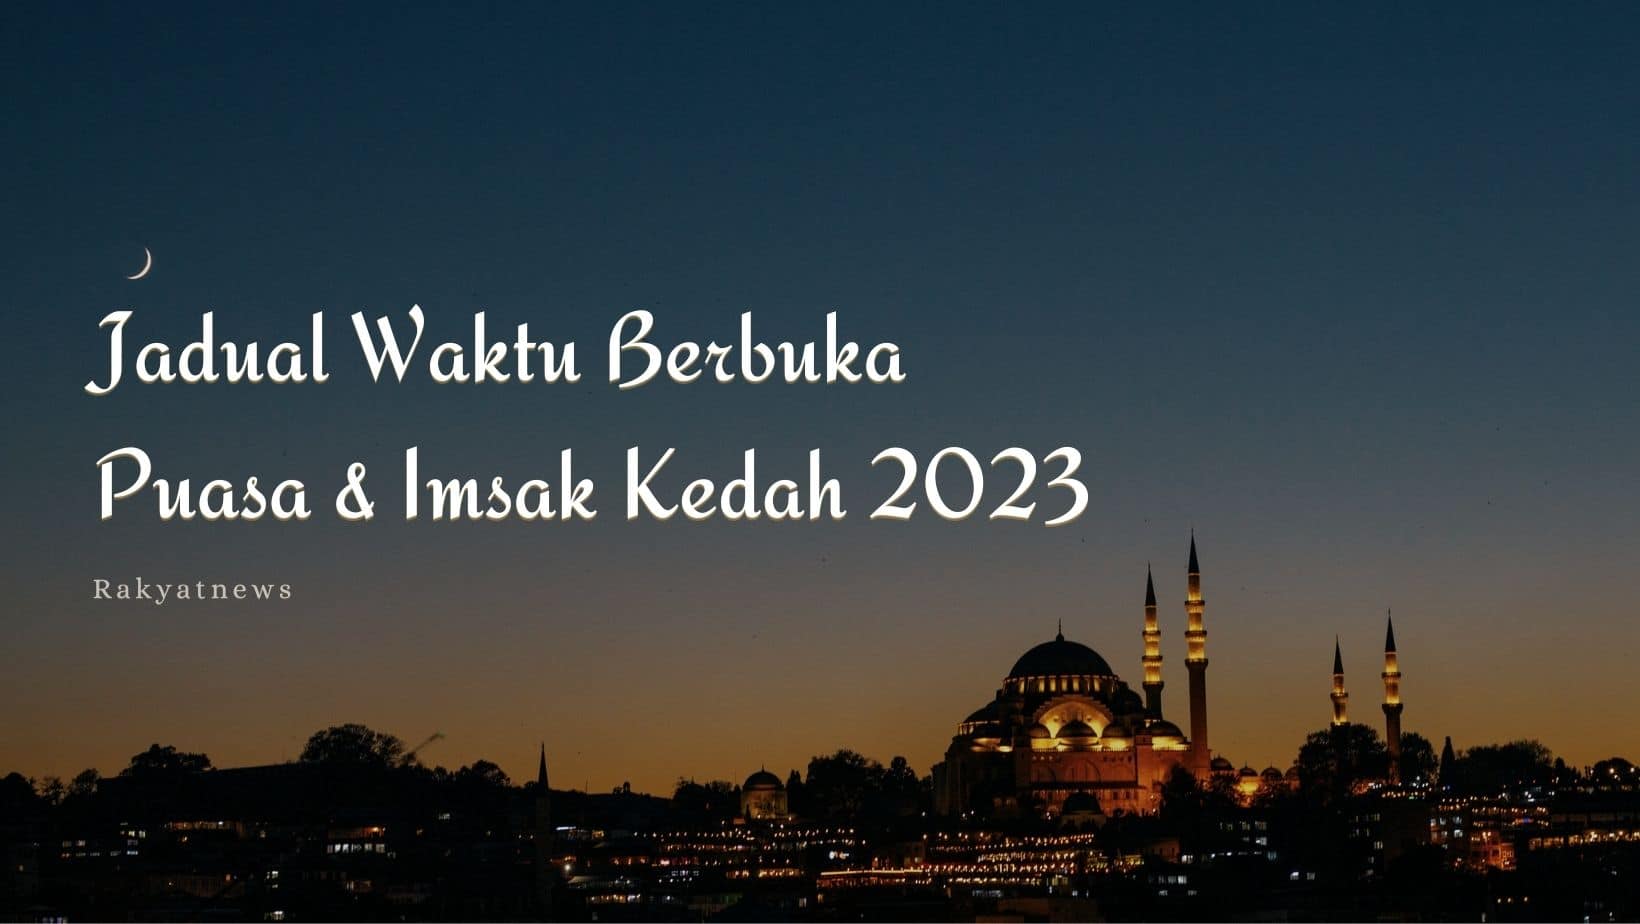 Jadual Waktu Berbuka Puasa & Imsak Kedah 2023